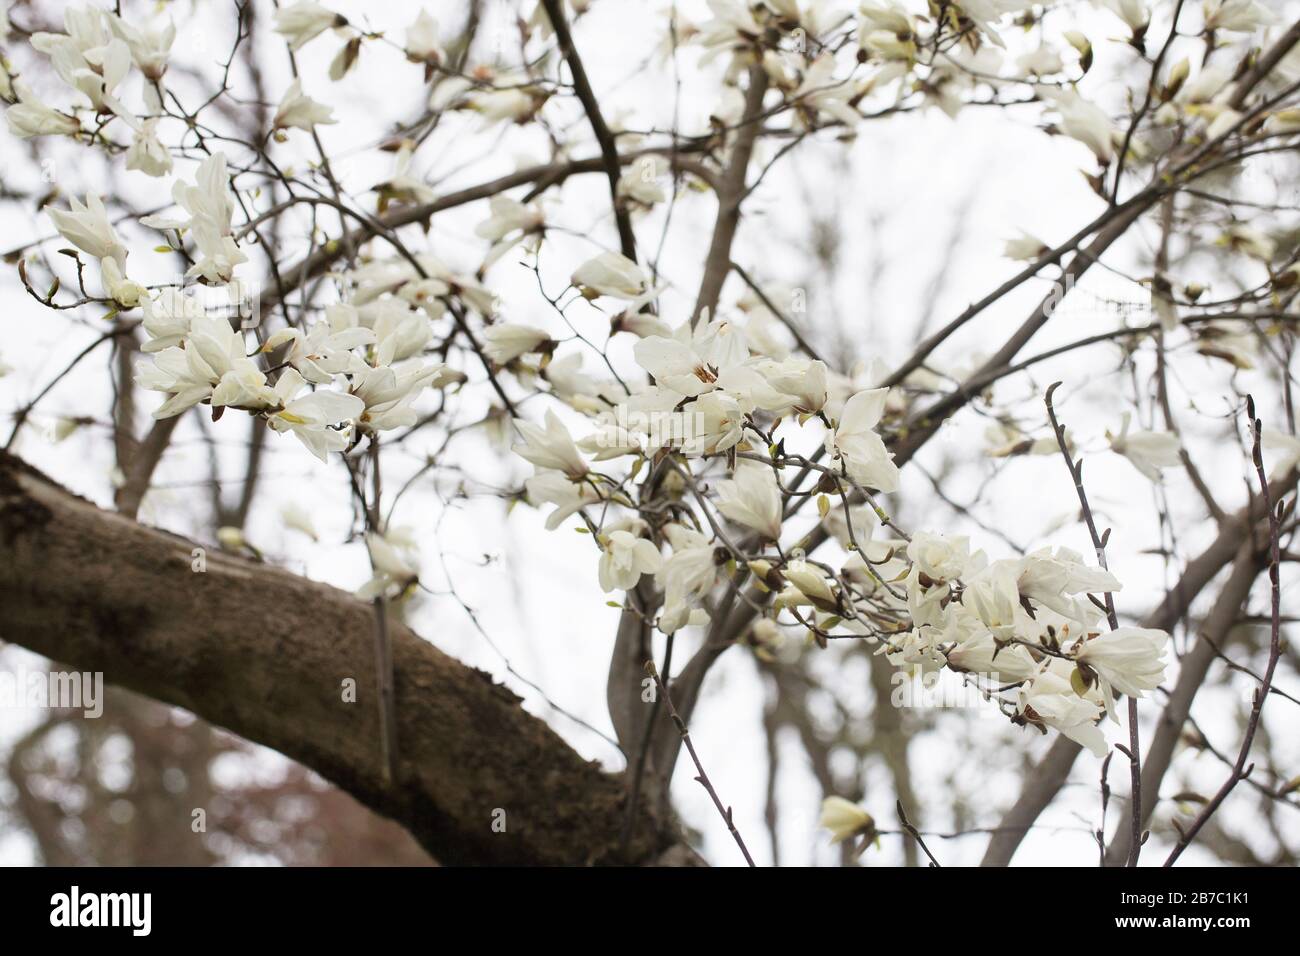 Magnolia kobus. Stock Photo